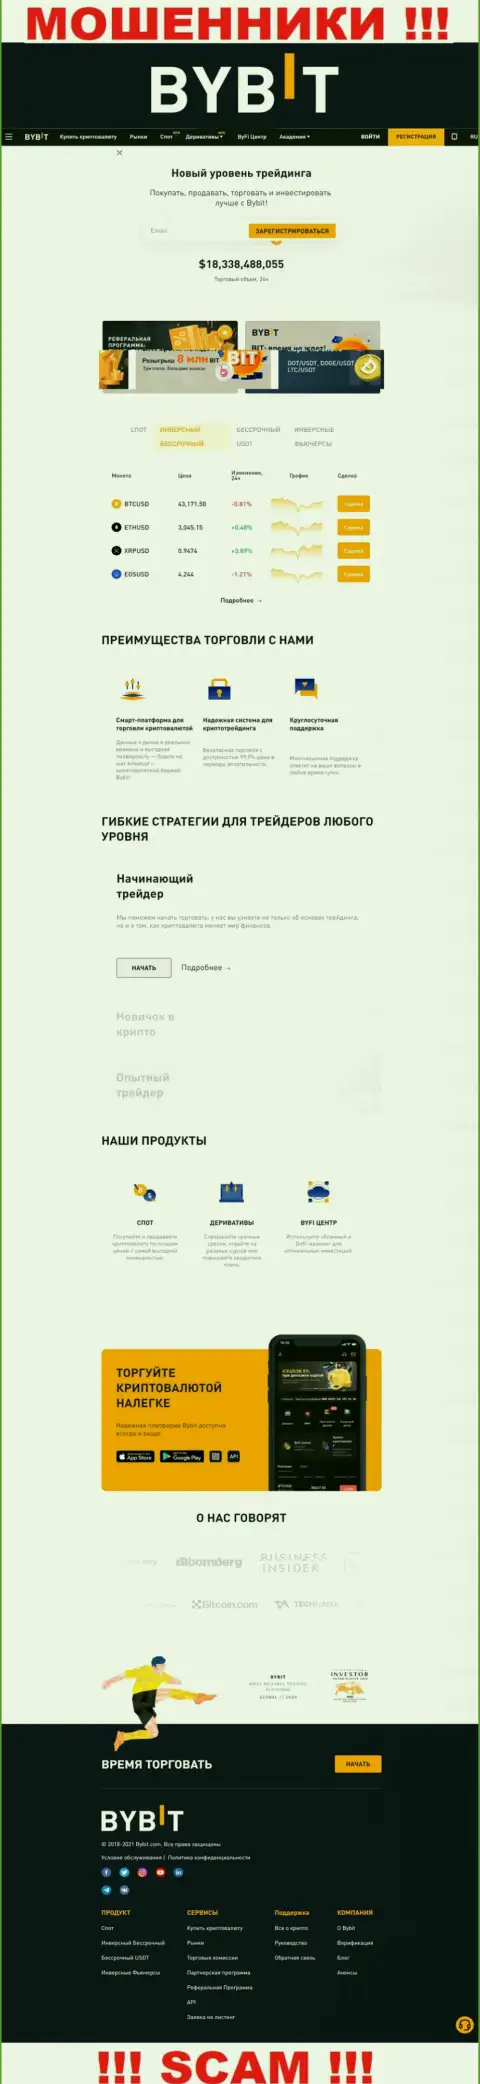 Главная страничка официального интернет-сервиса мошенников БайБит Финтеч Лтд